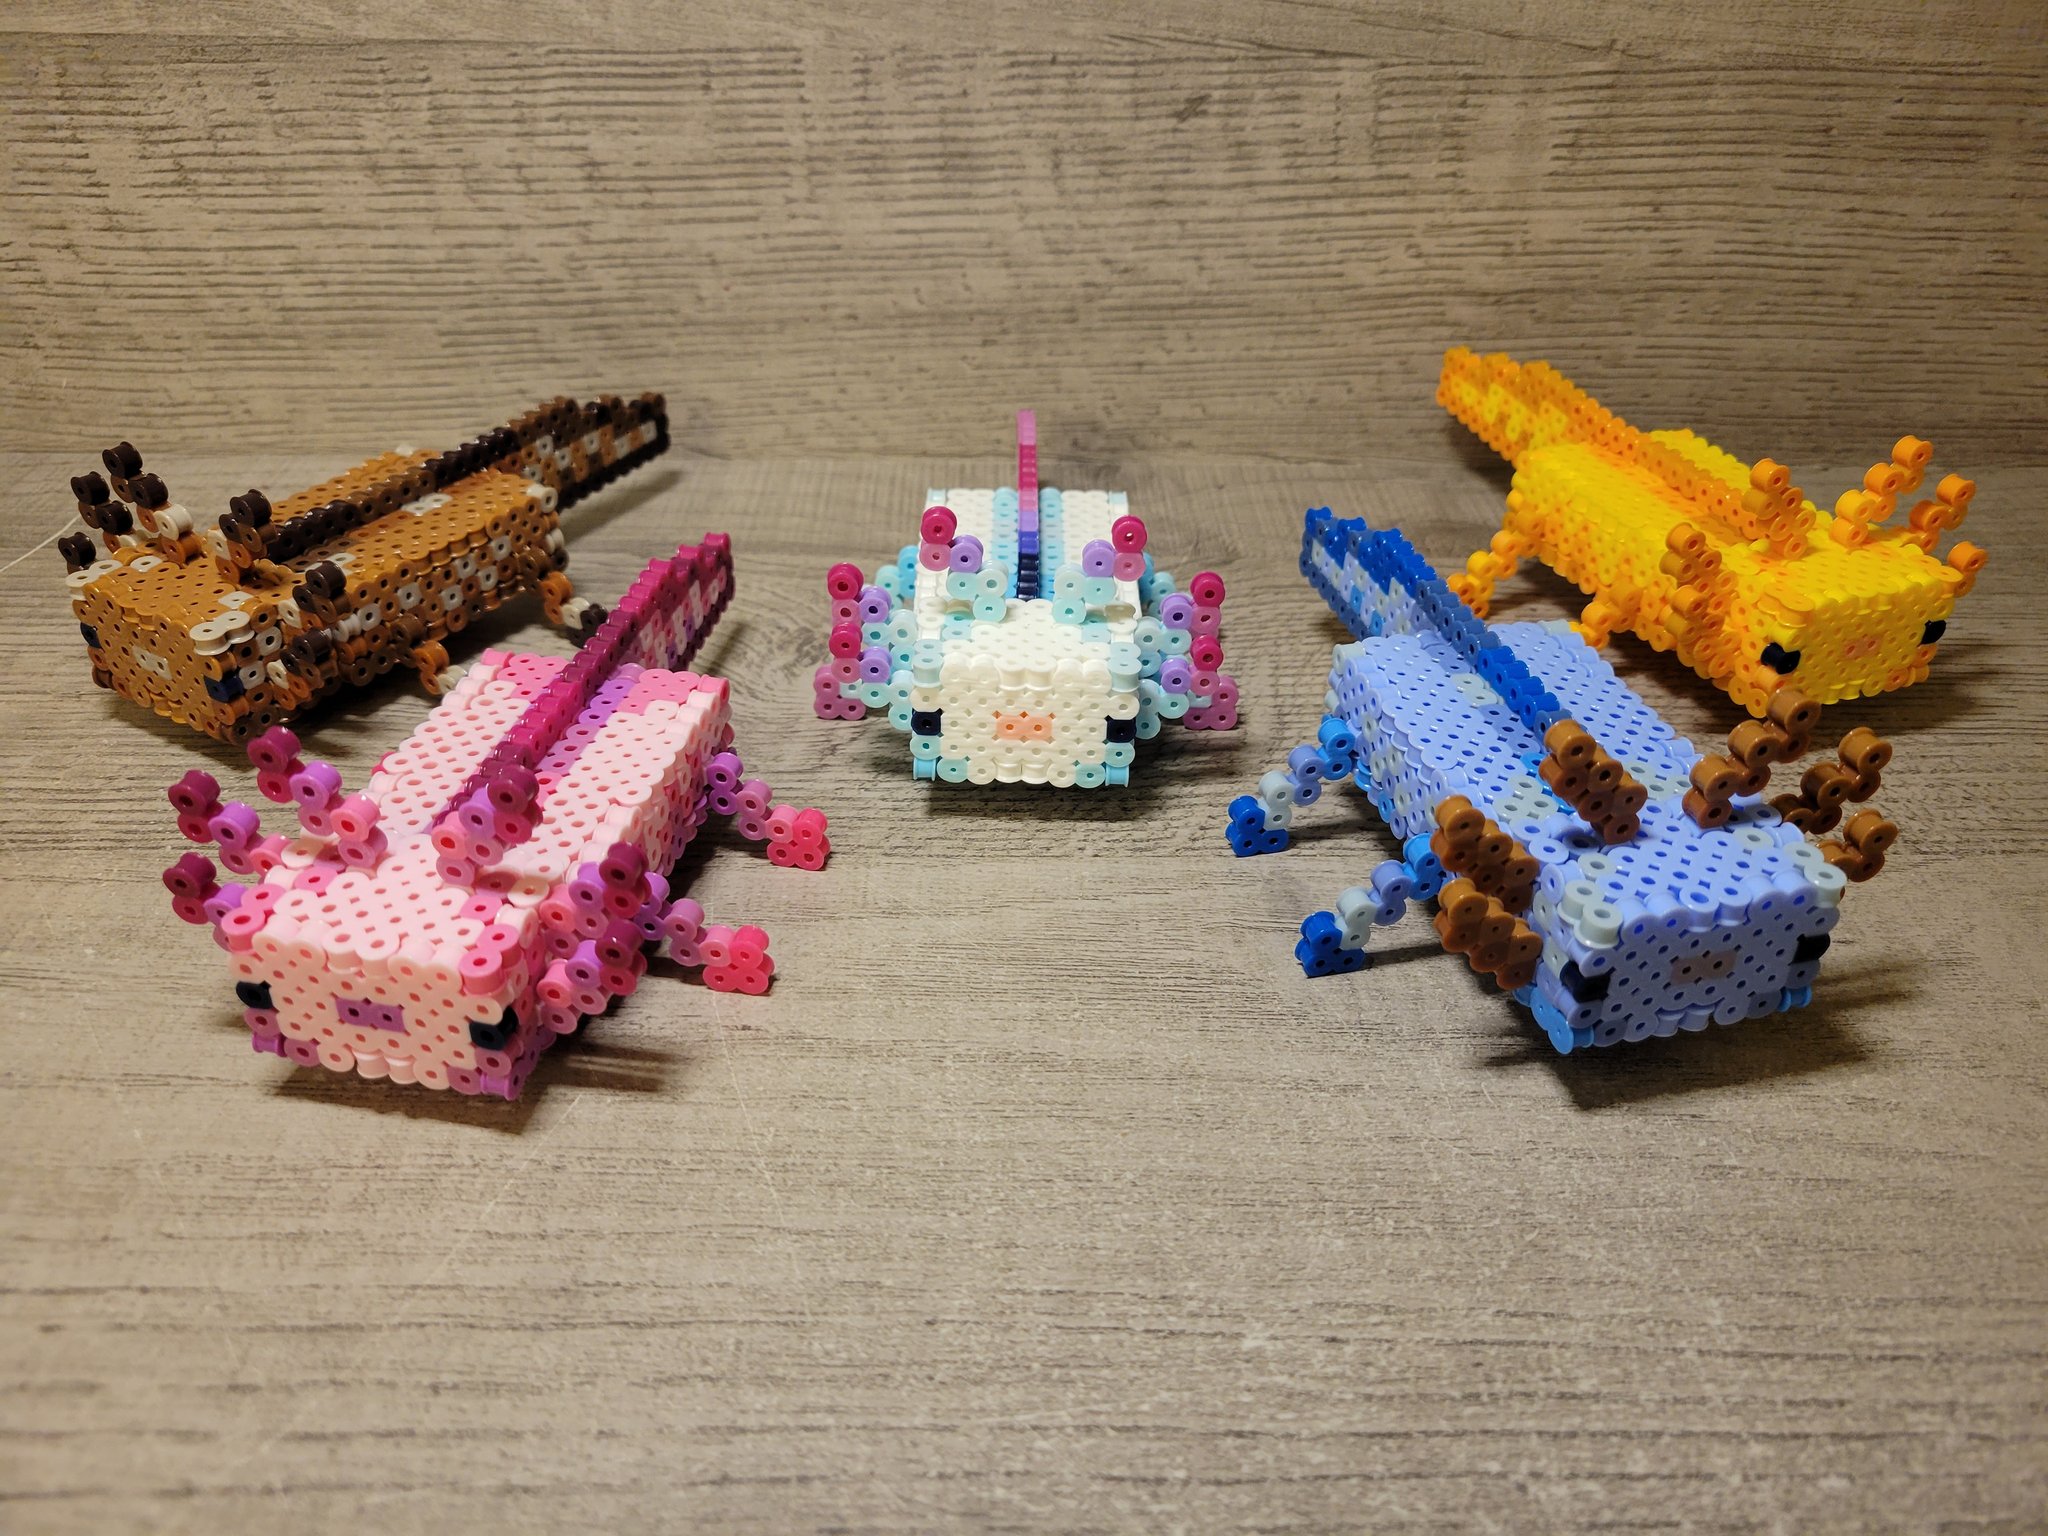 NeverEndingCraftsUS on X: Minecraft Axolotls #Minecraft #perler #  #crafts #axolotl #3d   / X